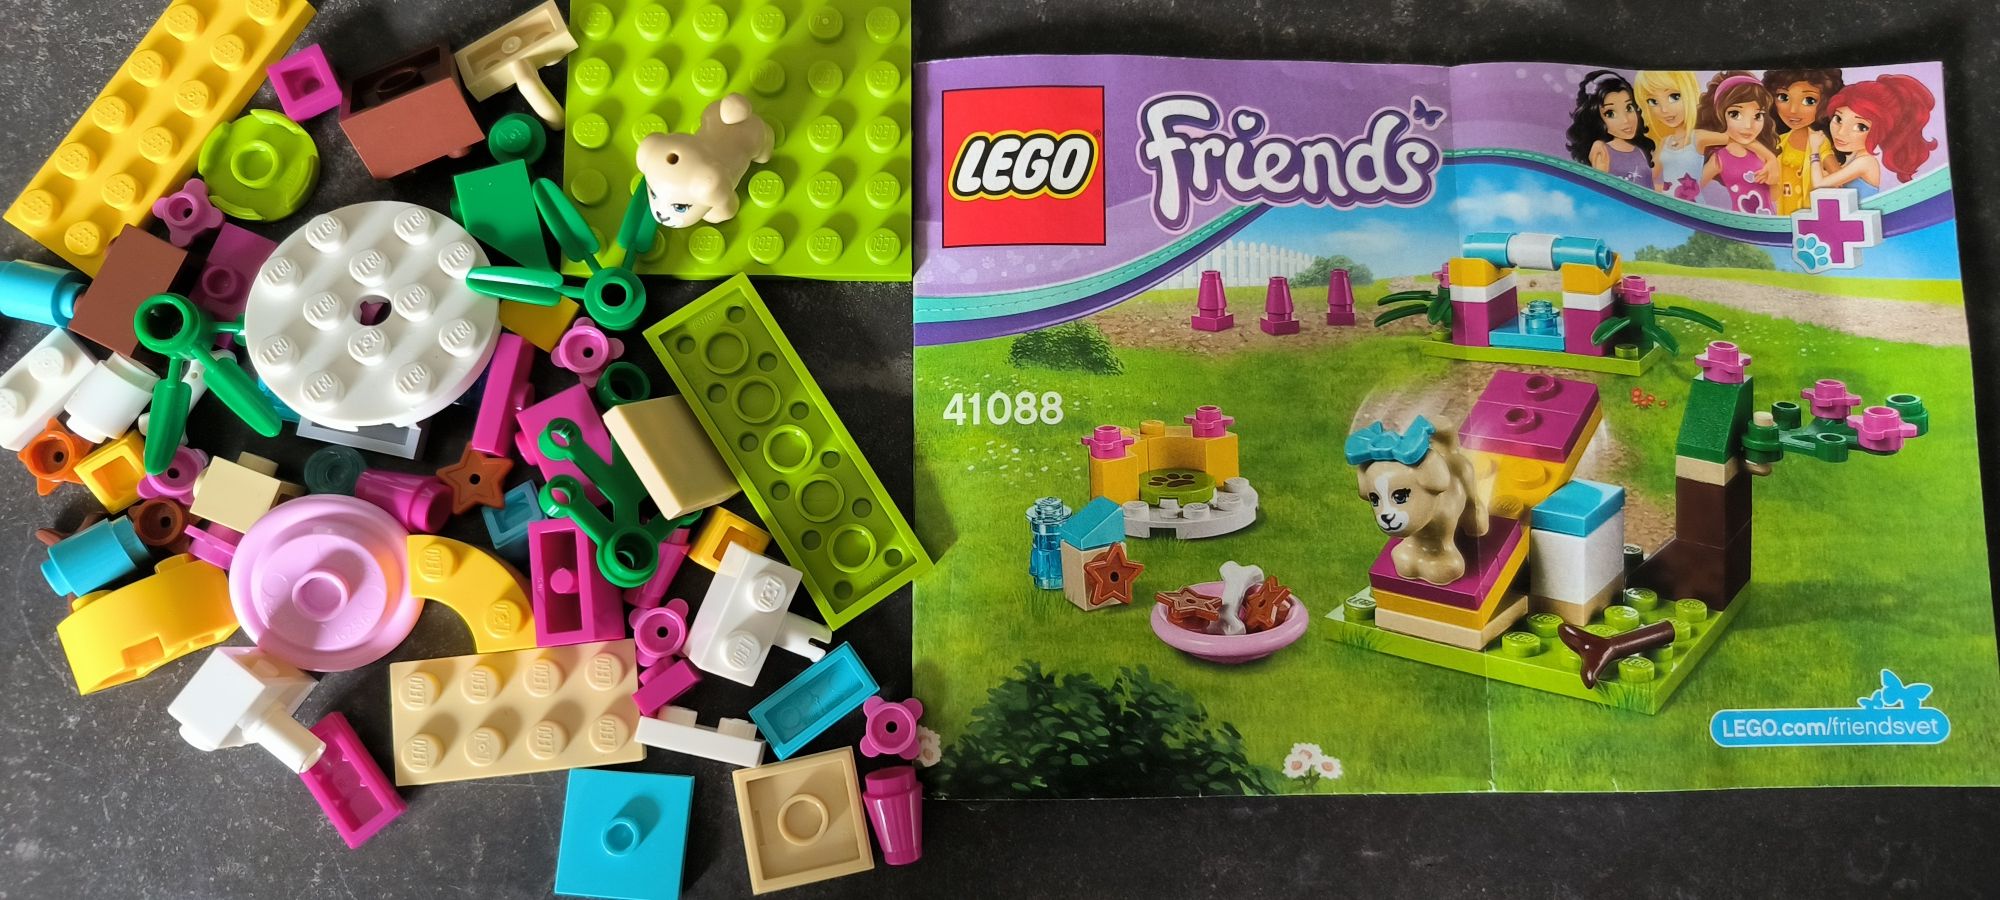 LEGO friends 41088 Trening szczeniaka